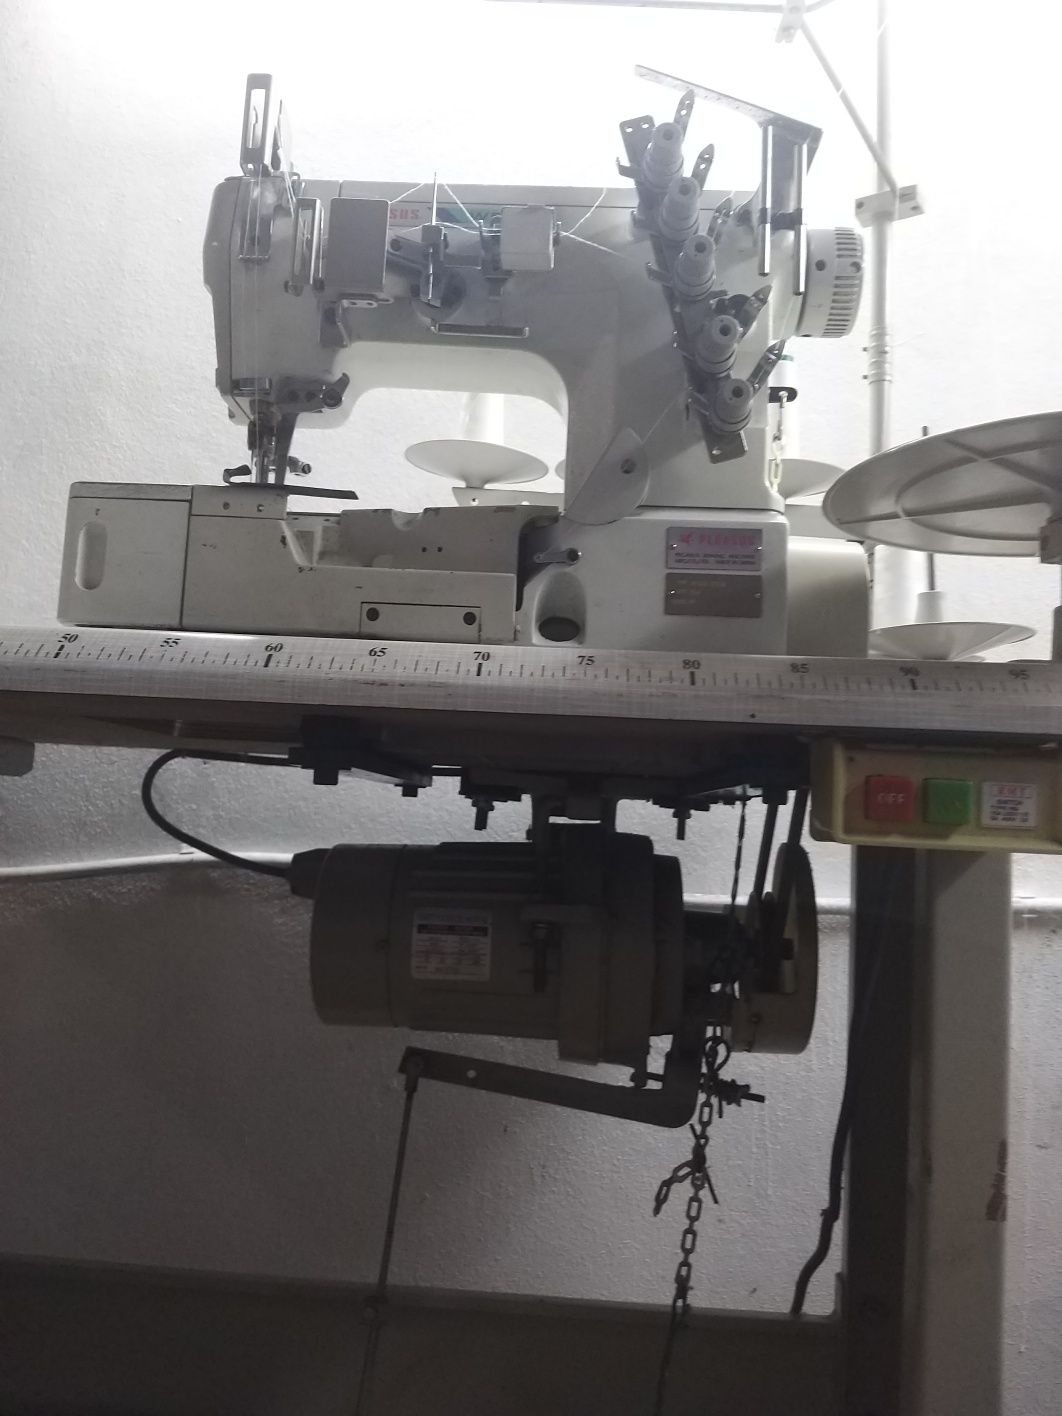 Maquina costura profissional
- Recobrimento / Colarete